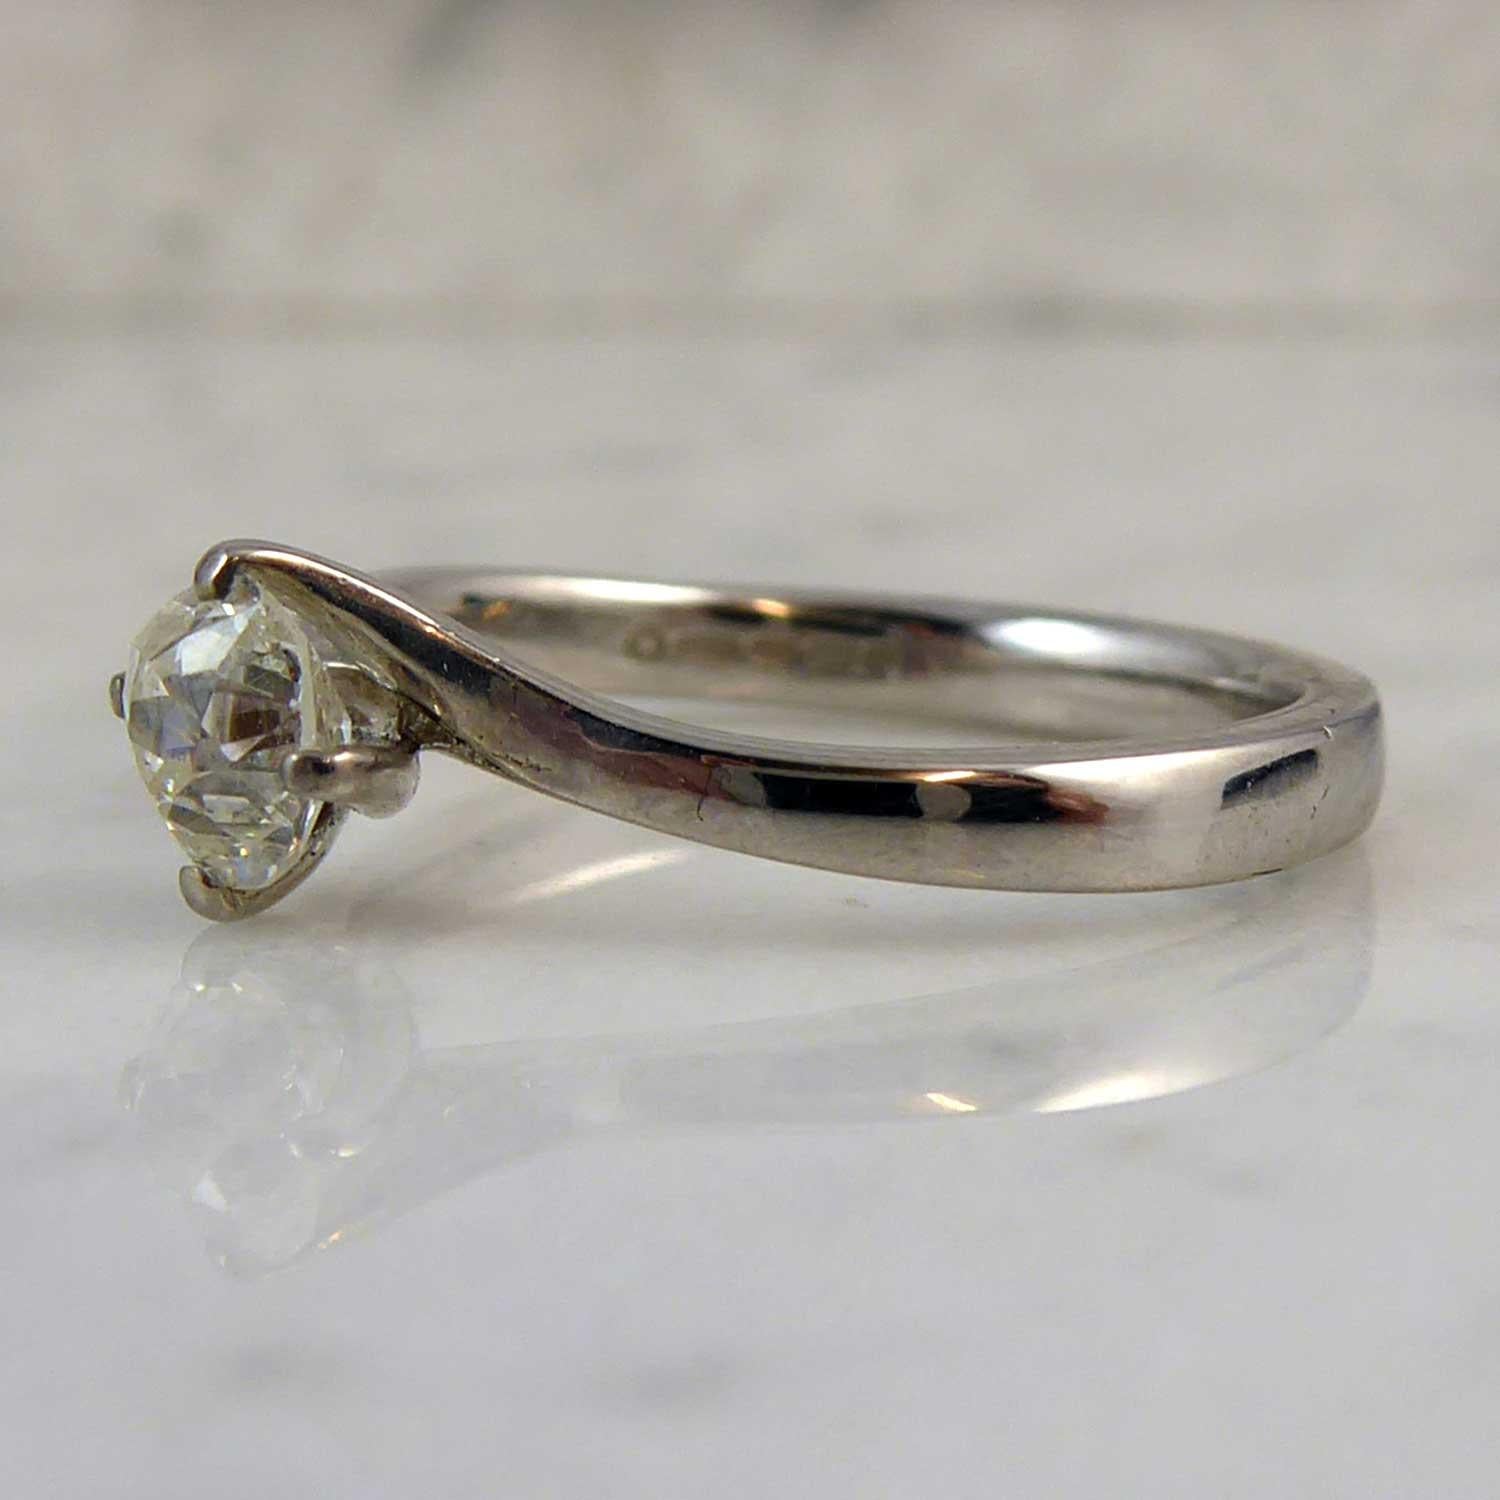 18 carat engagement ring